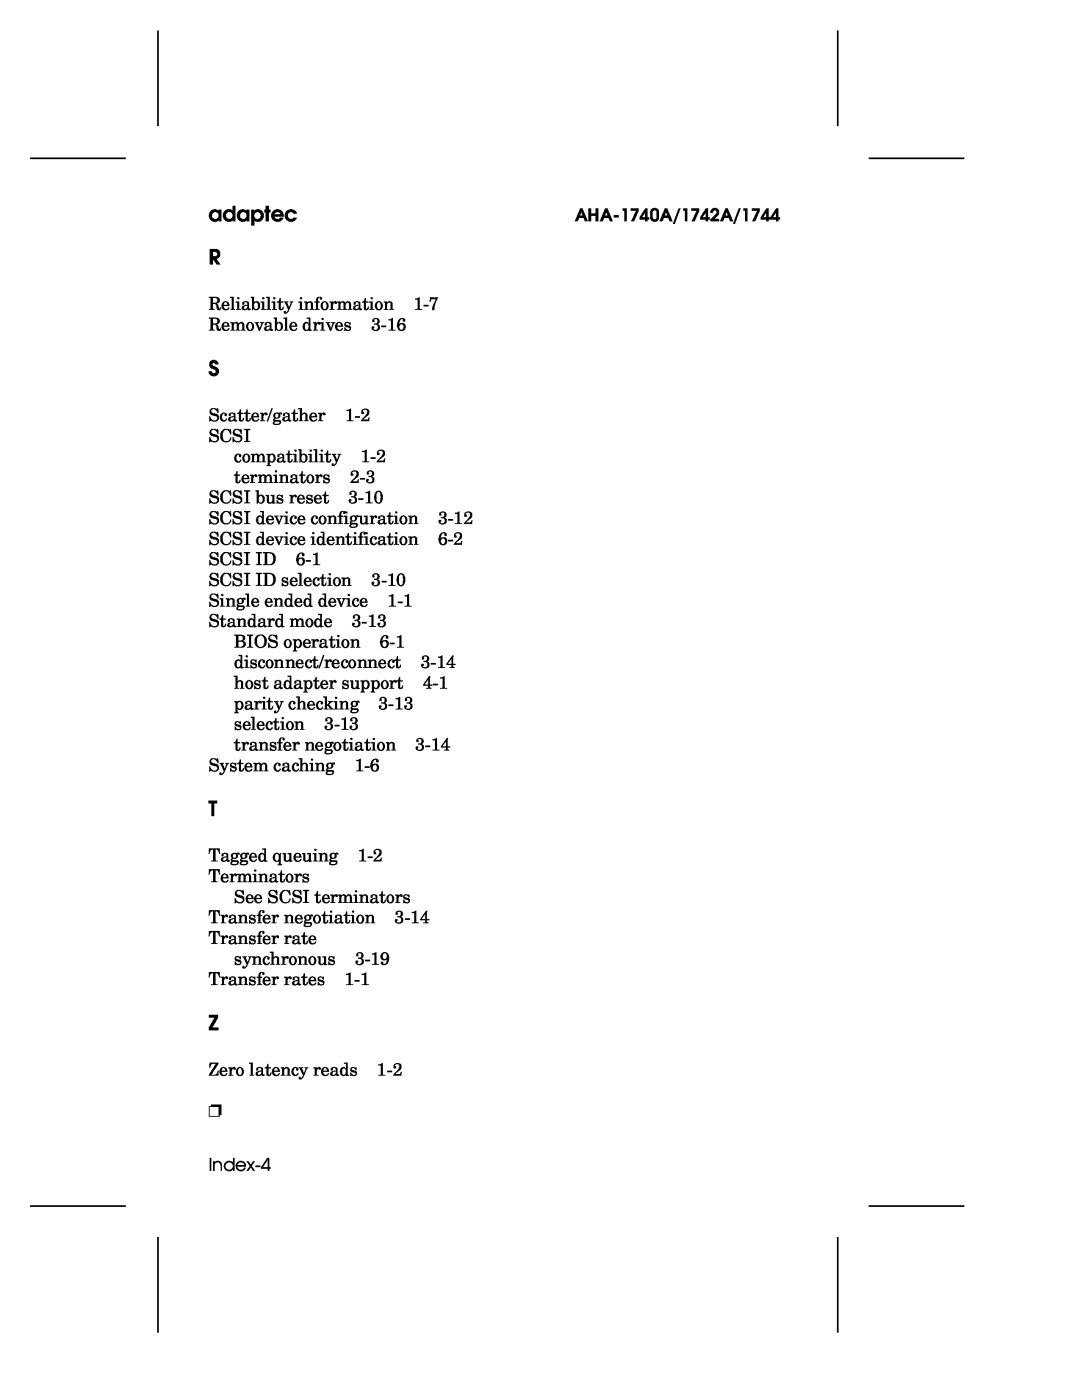 Adaptec user manual adaptec R, Index-4, AHA-1740A/1742A/1744 